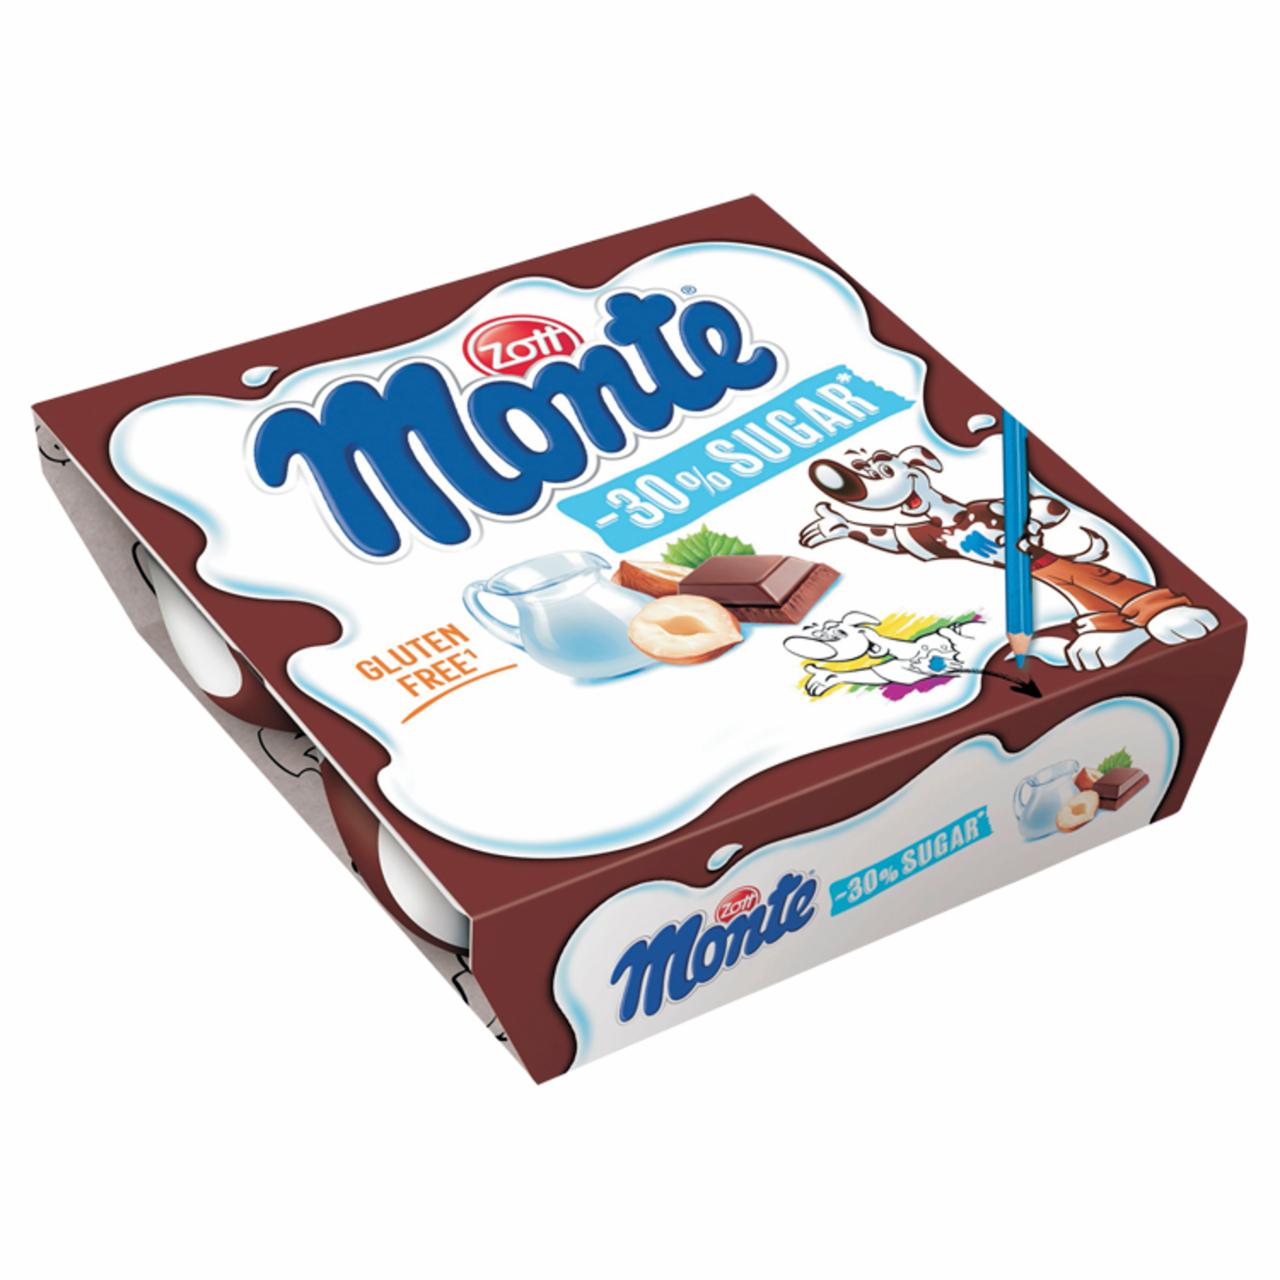 Képek - Zott Monte csokoládés, mogyorós tejdesszert -30% cukorral 4 x 55 g (220 g)